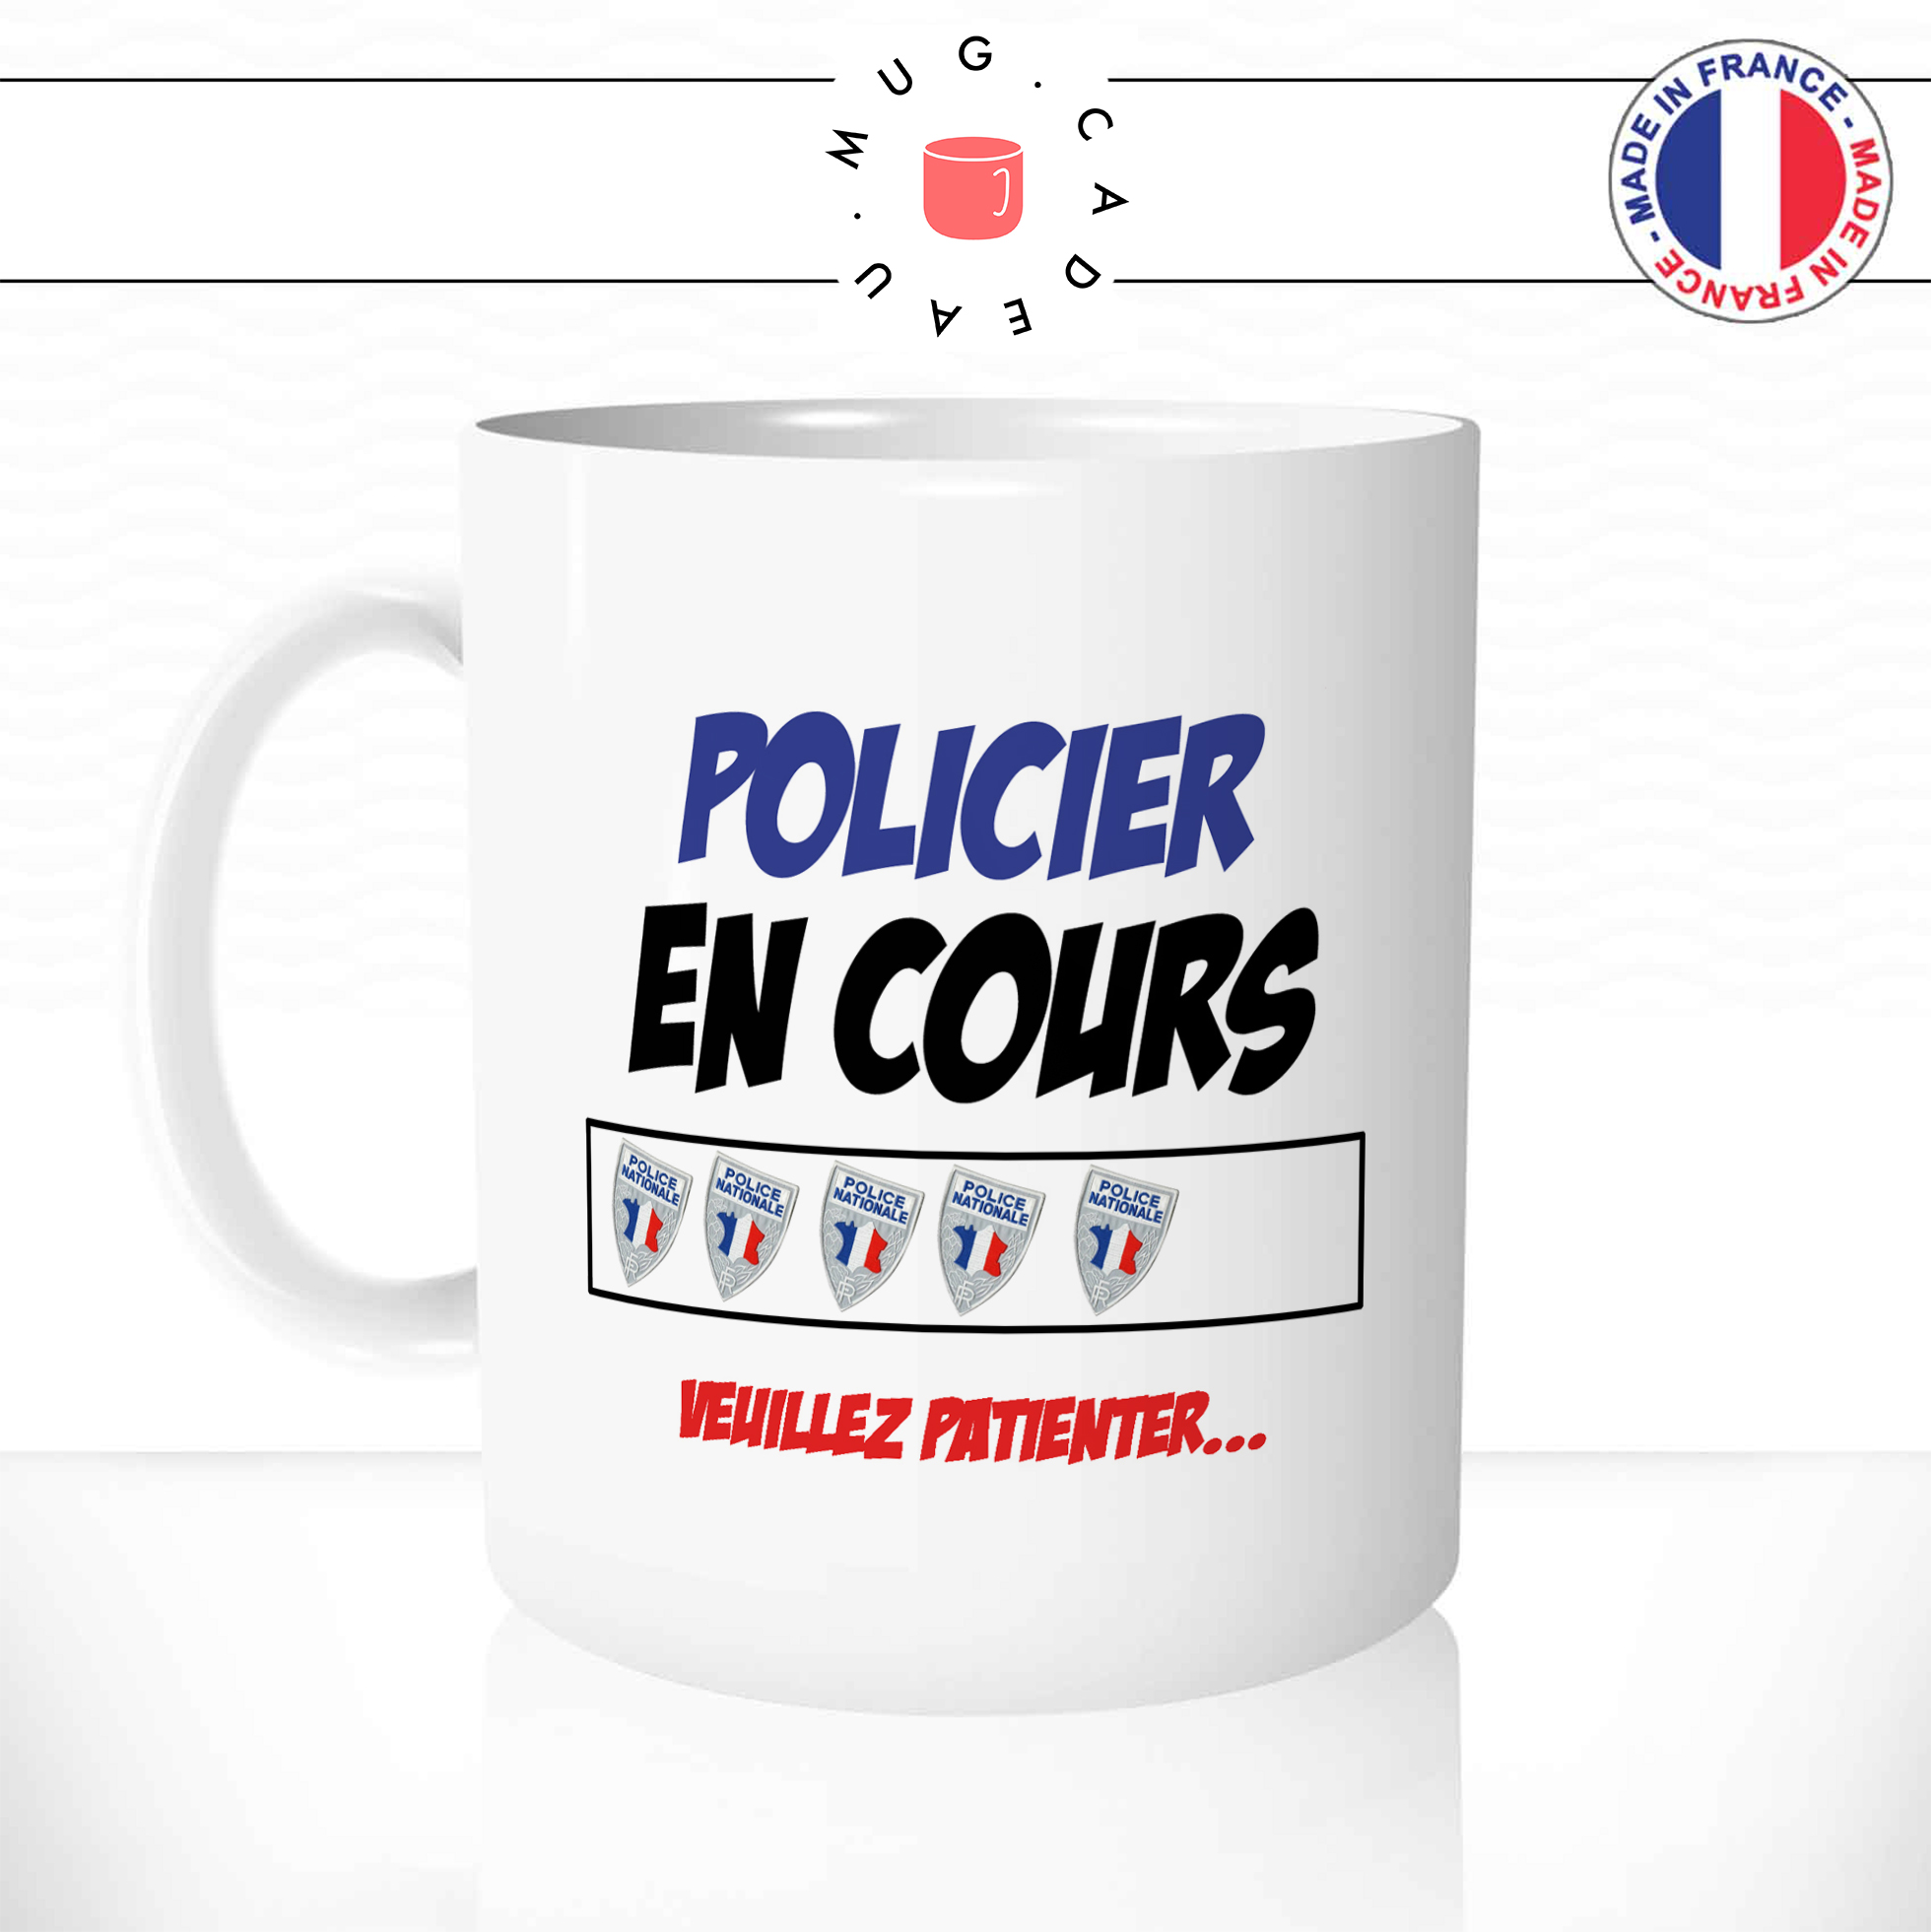 tasse-blanche-police-nationale-policier-en-cours